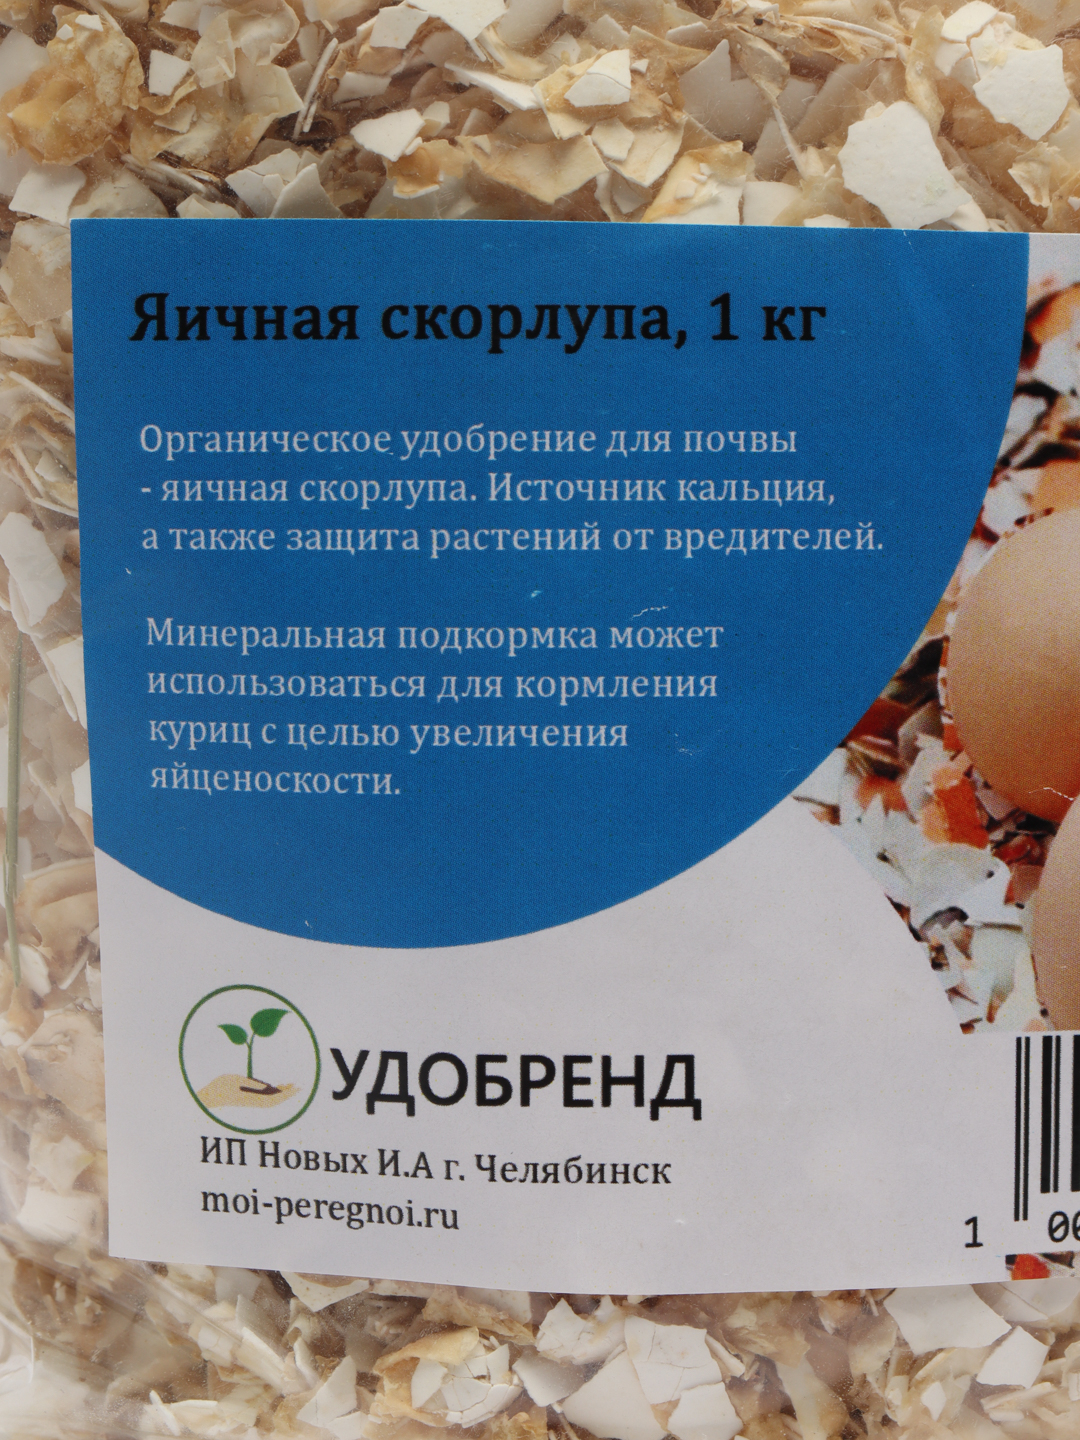 Яичная скорлупа какое удобрение. Яичная скорлупа удобрение. Удобр скорлупа яичная 3 кг формула природы (8) (ФХИ),.